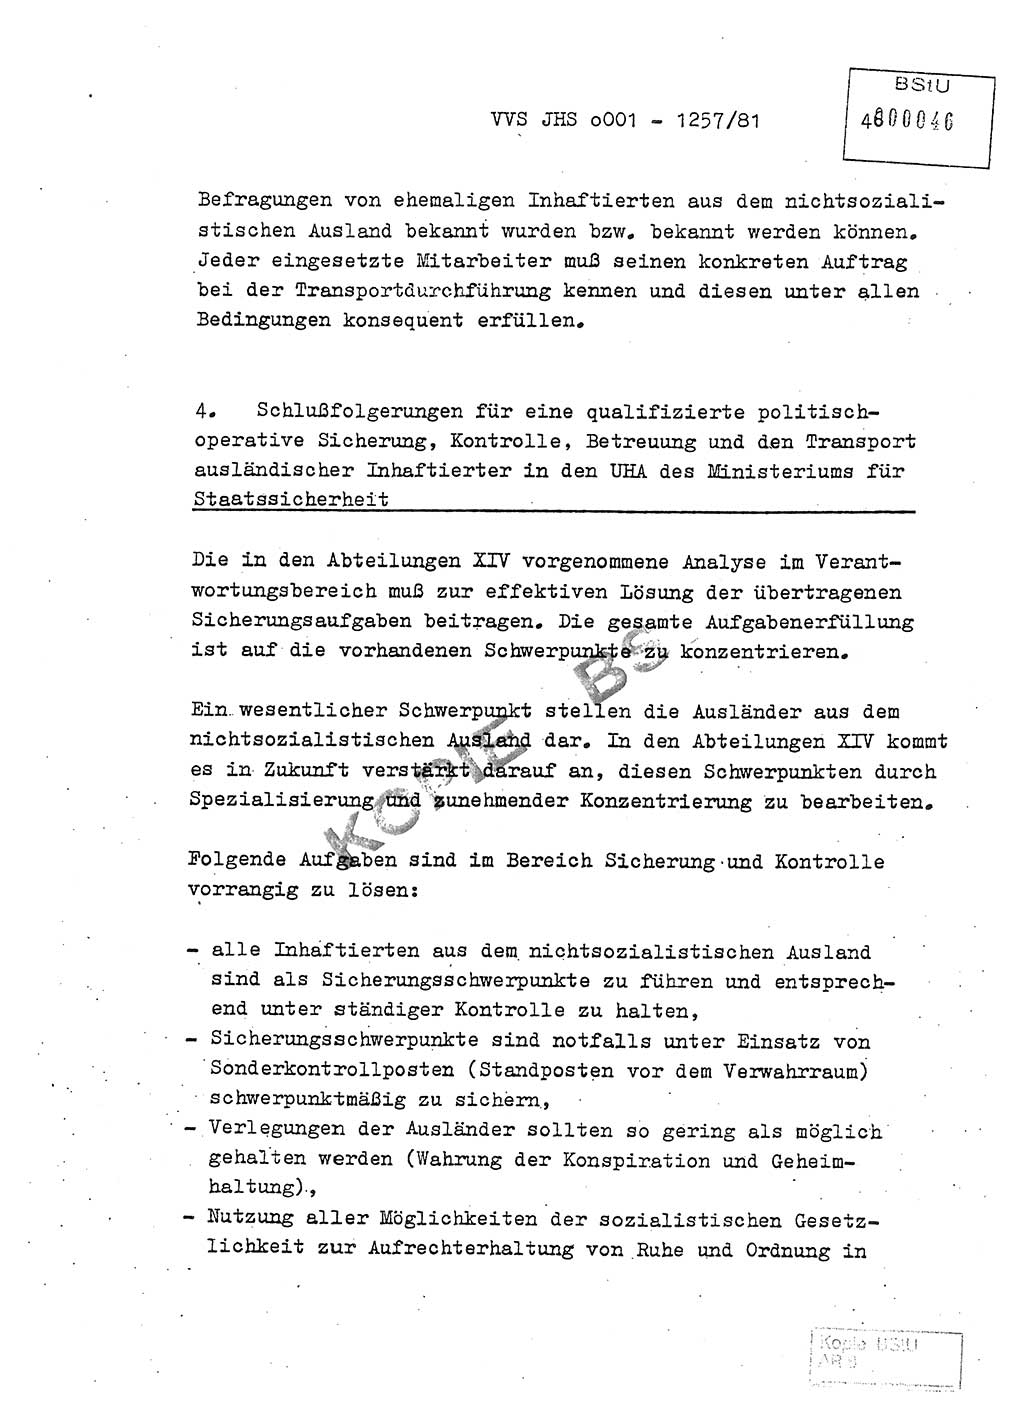 Fachschulabschlußarbeit Unterleutnant Dieter Möller (BV Rst. Abt. ⅩⅣ), Ministerium für Staatssicherheit (MfS) [Deutsche Demokratische Republik (DDR)], Juristische Hochschule (JHS), Vertrauliche Verschlußsache (VVS) o001-1257/81, Potsdam 1982, Seite 46 (FS-Abschl.-Arb. MfS DDR JHS VVS o001-1257/81 1982, S. 46)